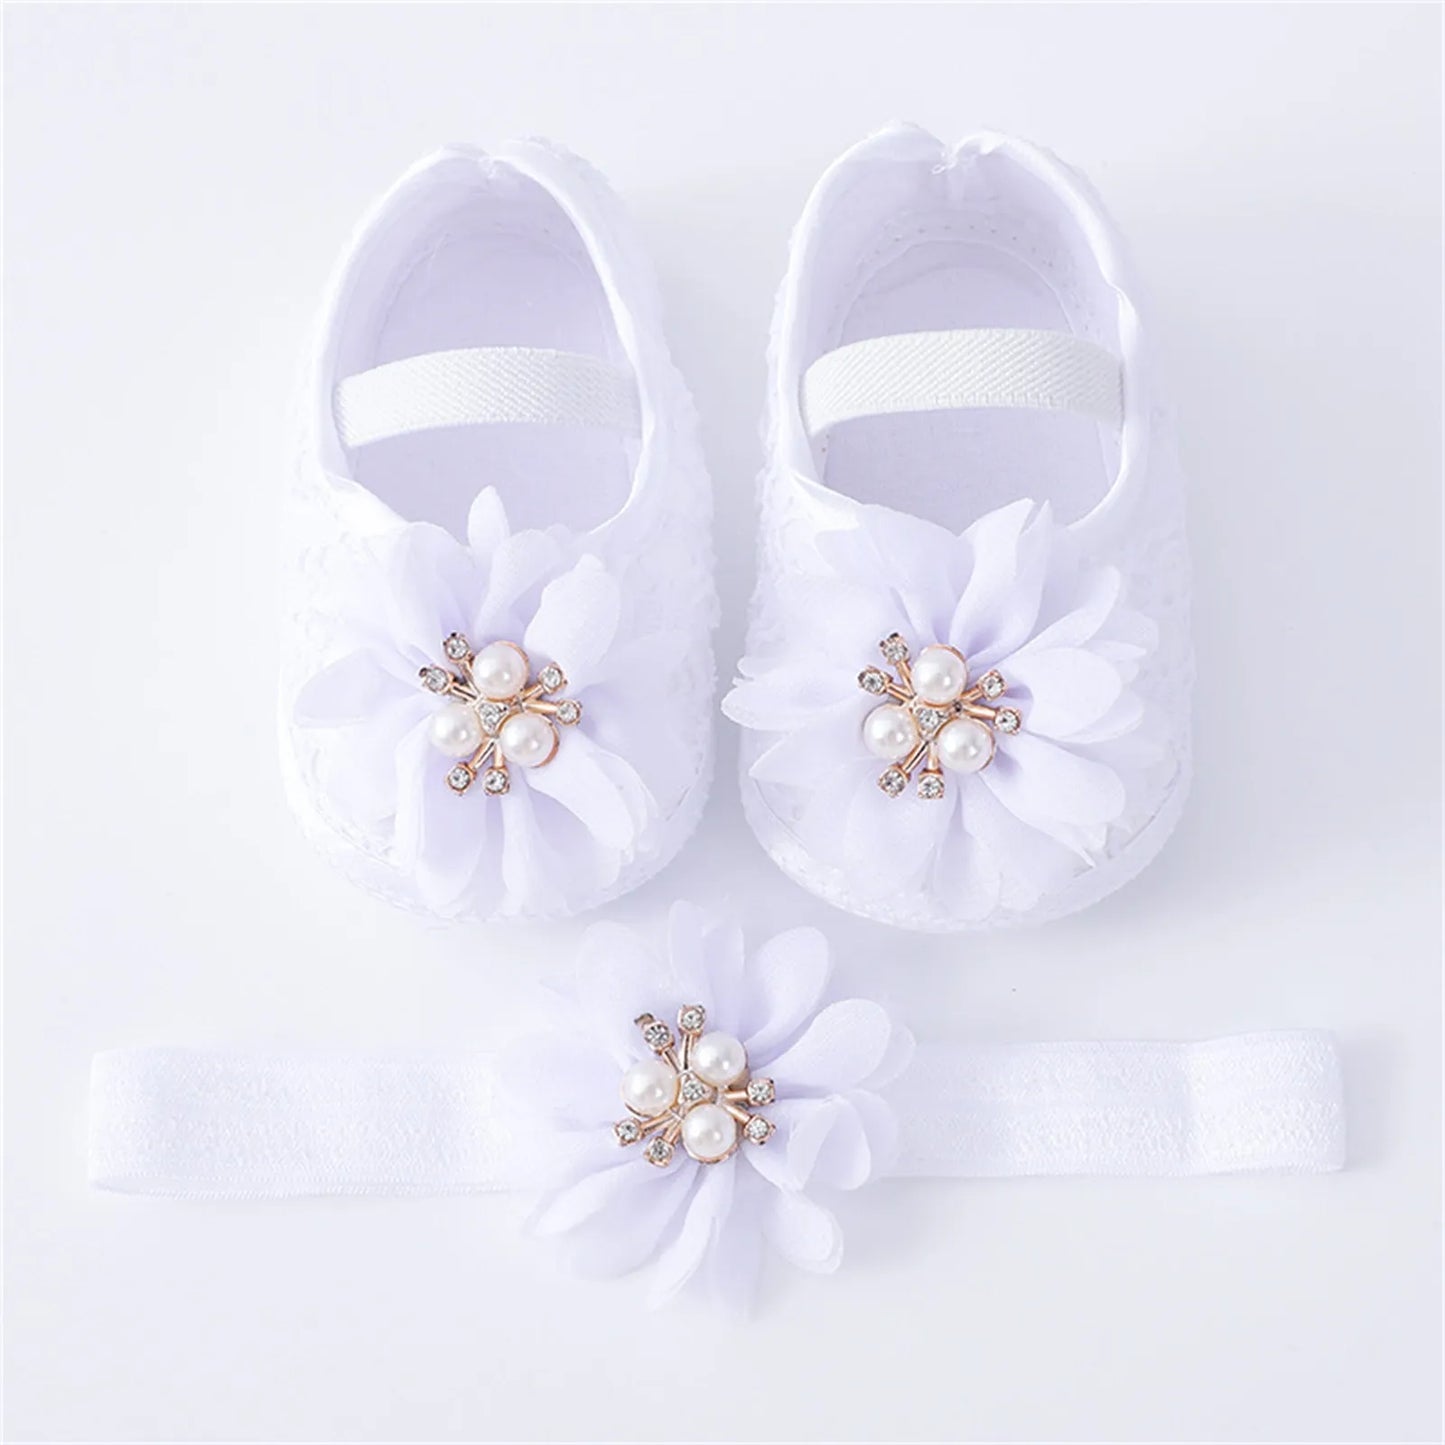 Soft Sole Non-slip Pearl Flower Princes's Shoes